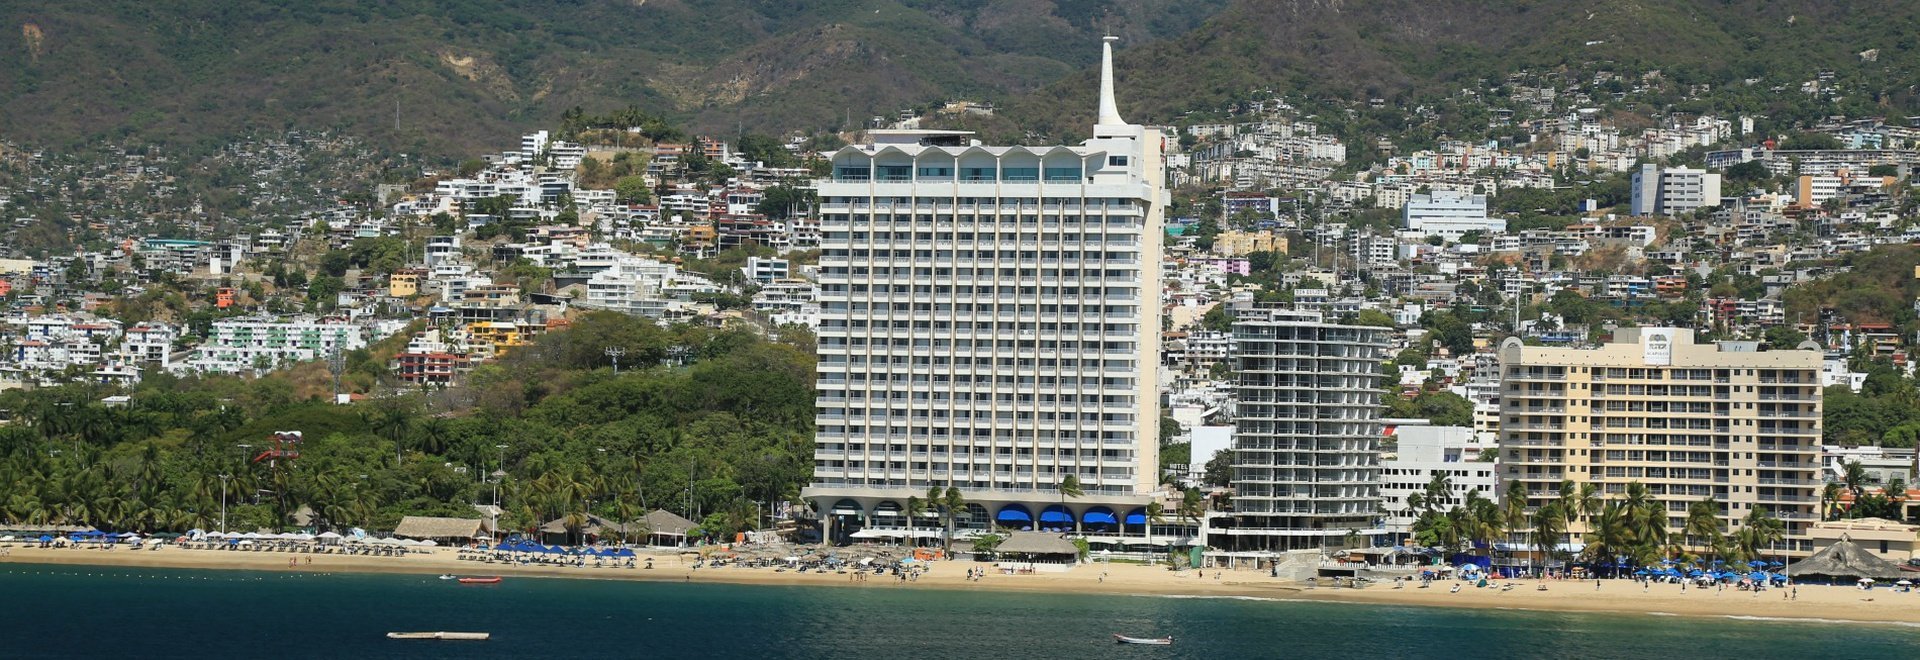 Krystal Beach Acapulco Hotel -  